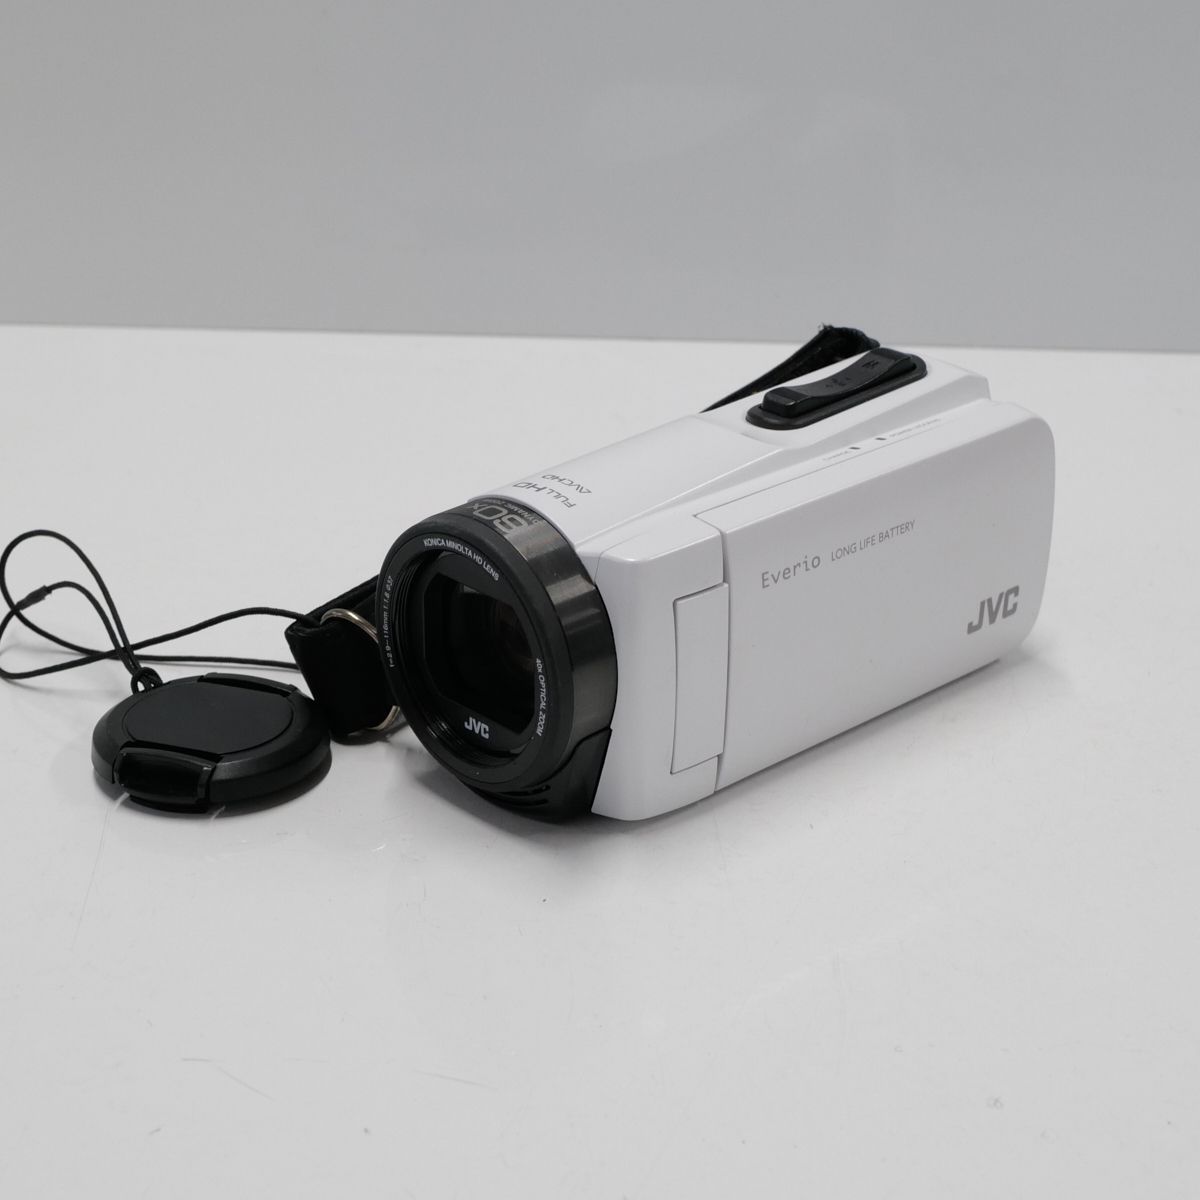 エブリオ ビデオカメラ GZ-F270-W - ビデオカメラ